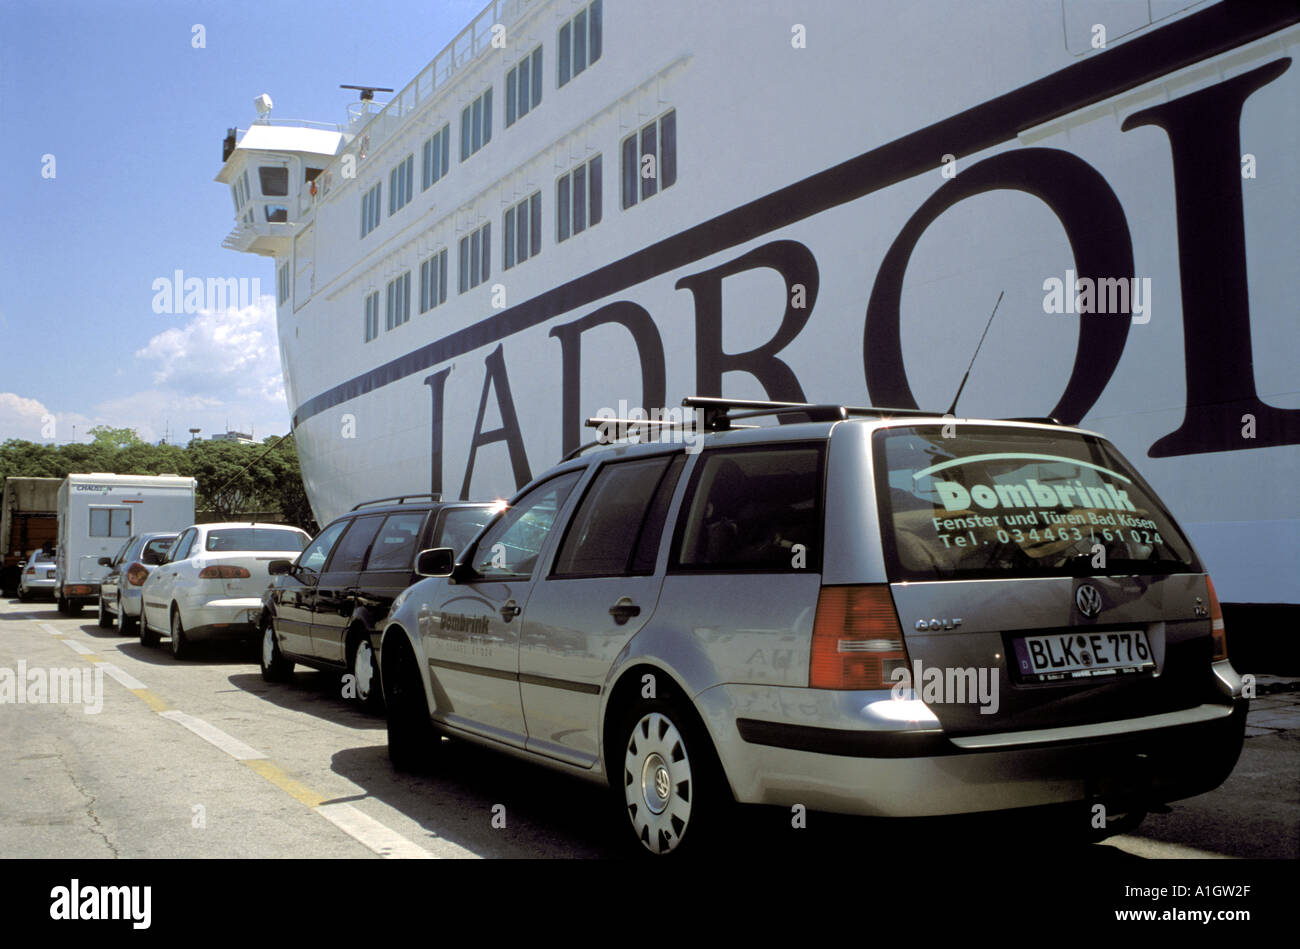 Voitures et fourgons de queue de conseil Car-ferry Jadrolinija amarré au port de Split Dalmatie Croatie Mer Adriatique Mai 2004 Banque D'Images